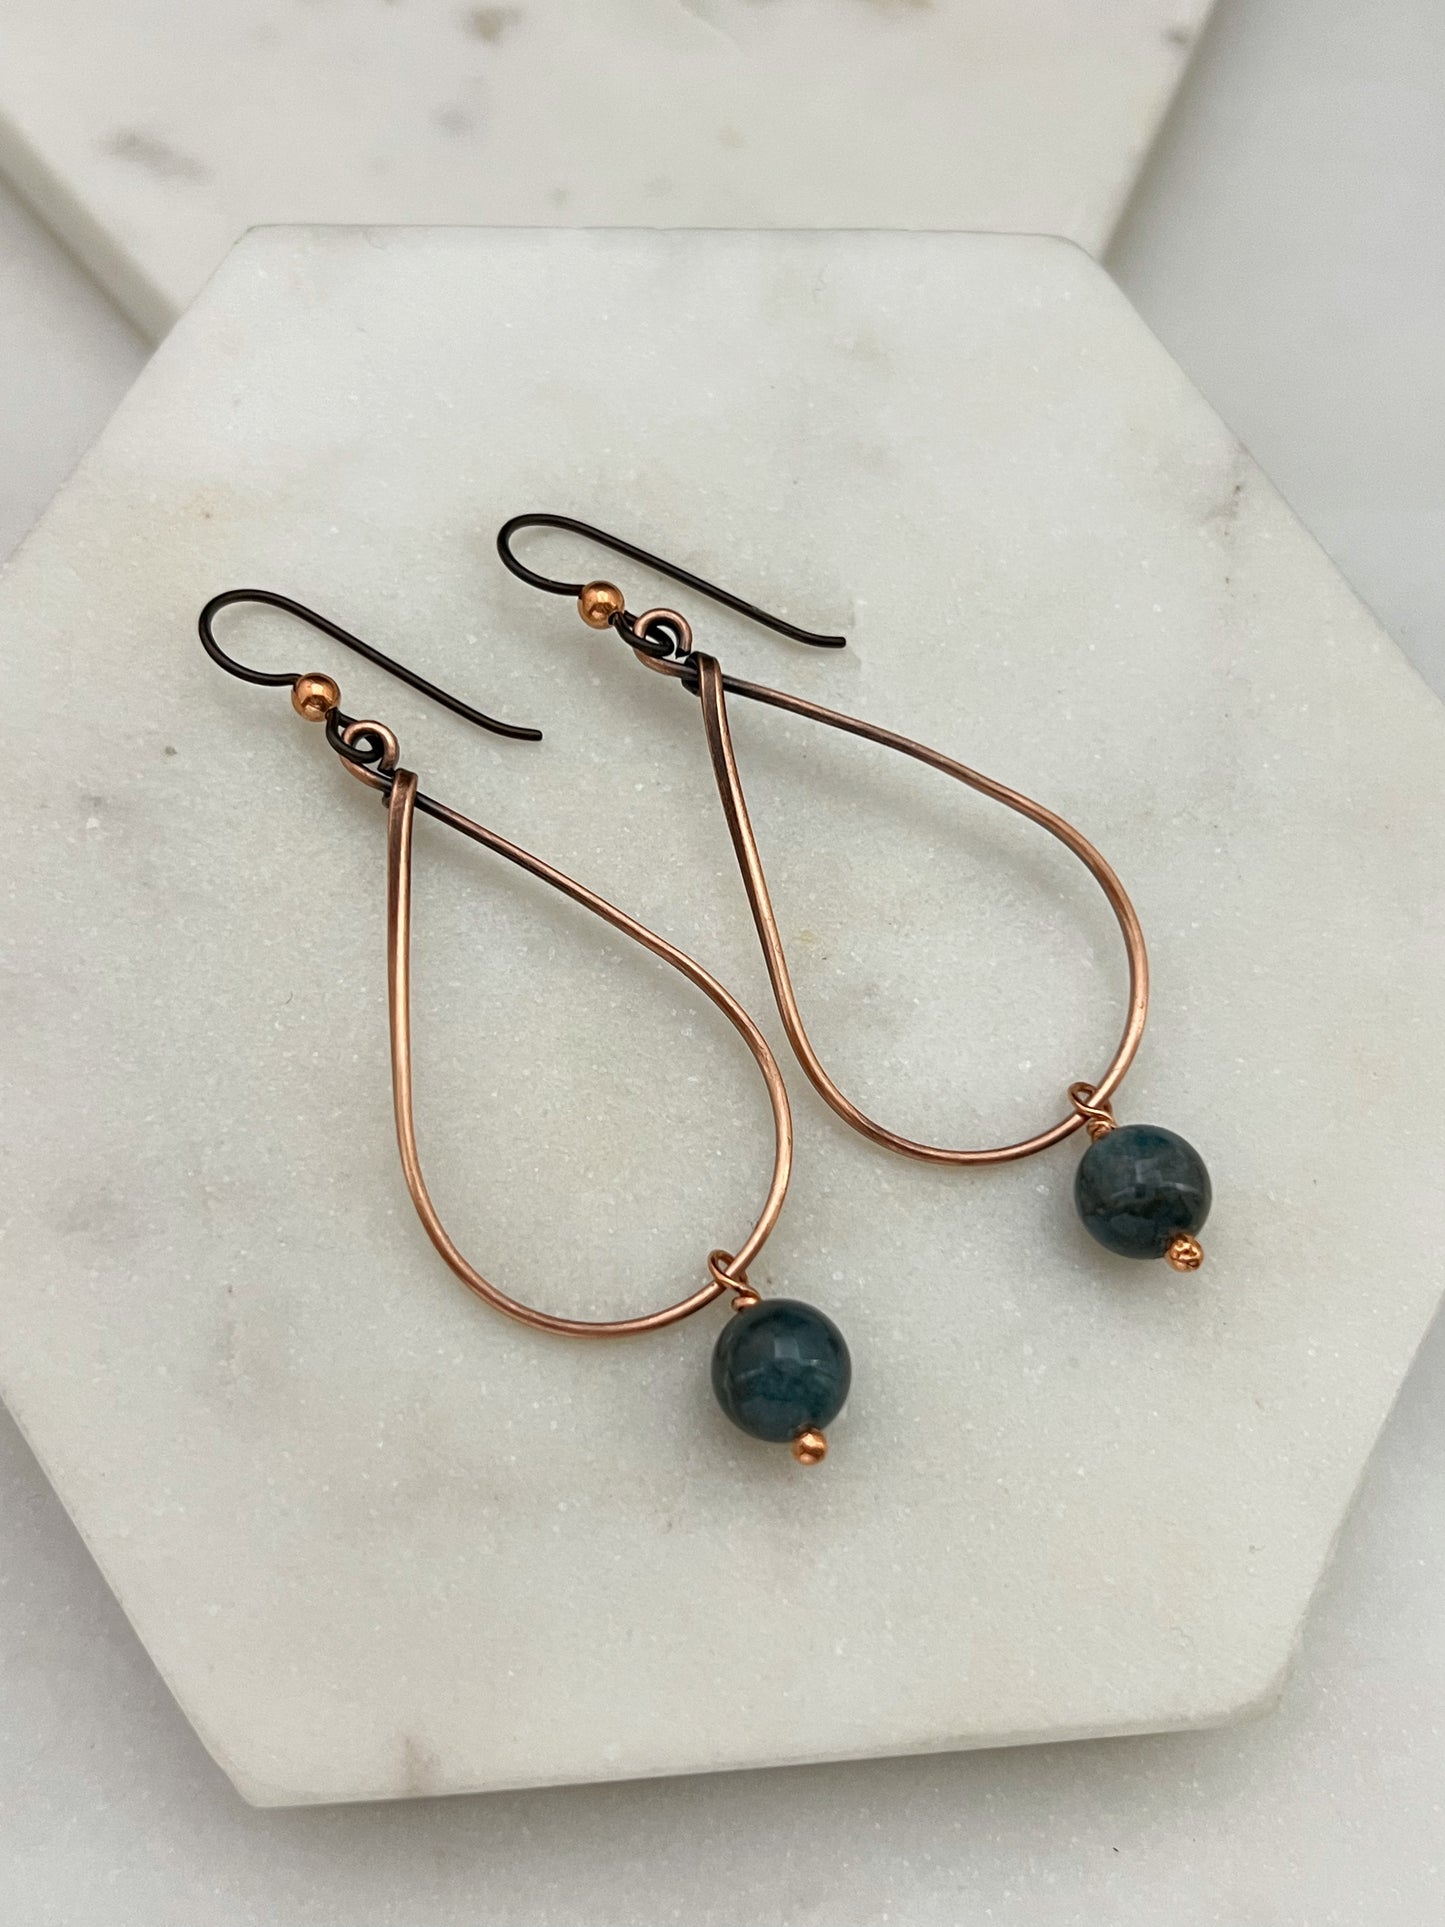 Copper teardrop hoop earrings with moss agate